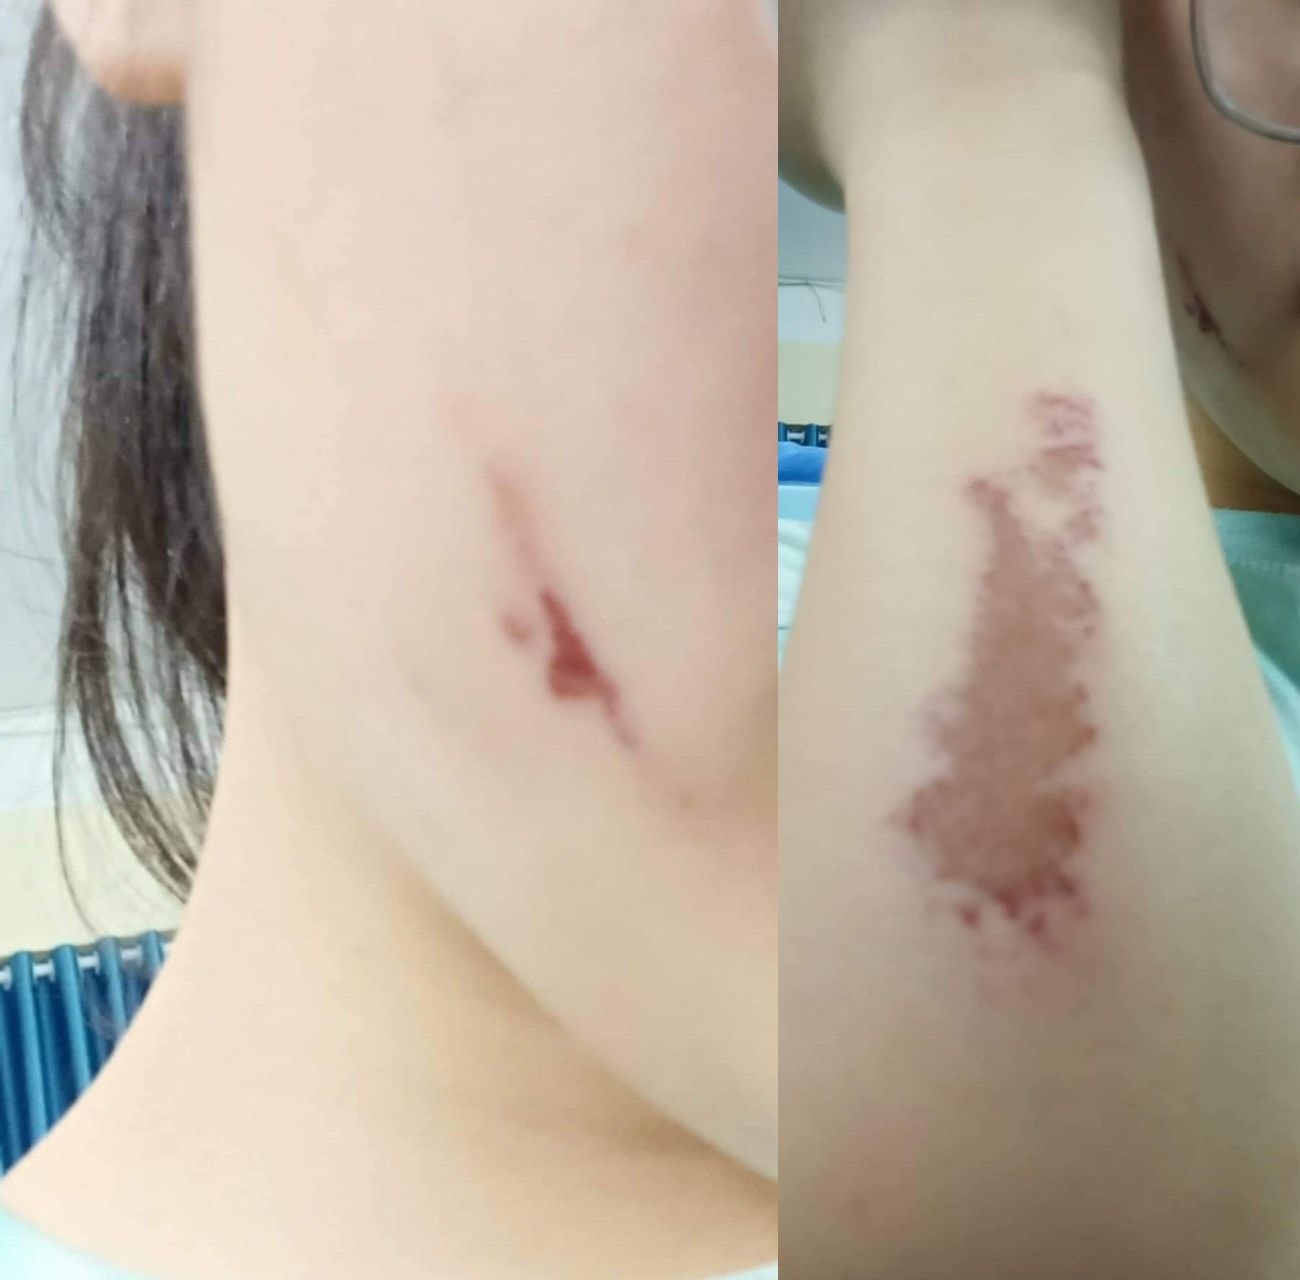 Phát hiện một nữ sinh bị đánh trầy trật và đe dọa trong phòng nội trú: gia đình bất ngờ vì trường không tố cáo - Ảnh 1